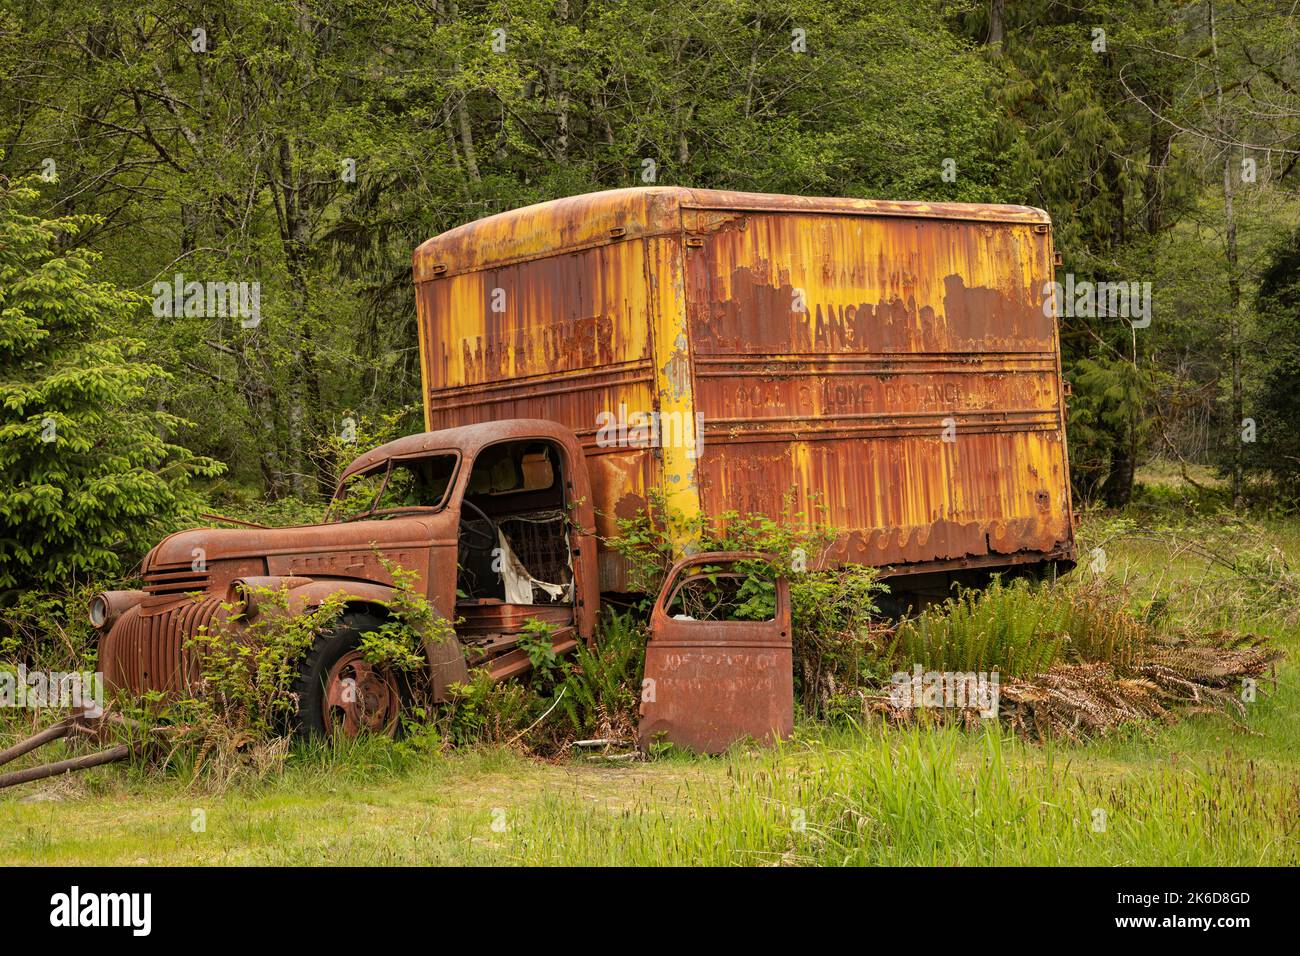 WA22249-00...WASHINGTON - Vecchio, camion di consegna, in mostra presso la storica Kestner Homestead nella foresta pluviale di Quinault del Parco Nazionale Olimpico. Foto Stock